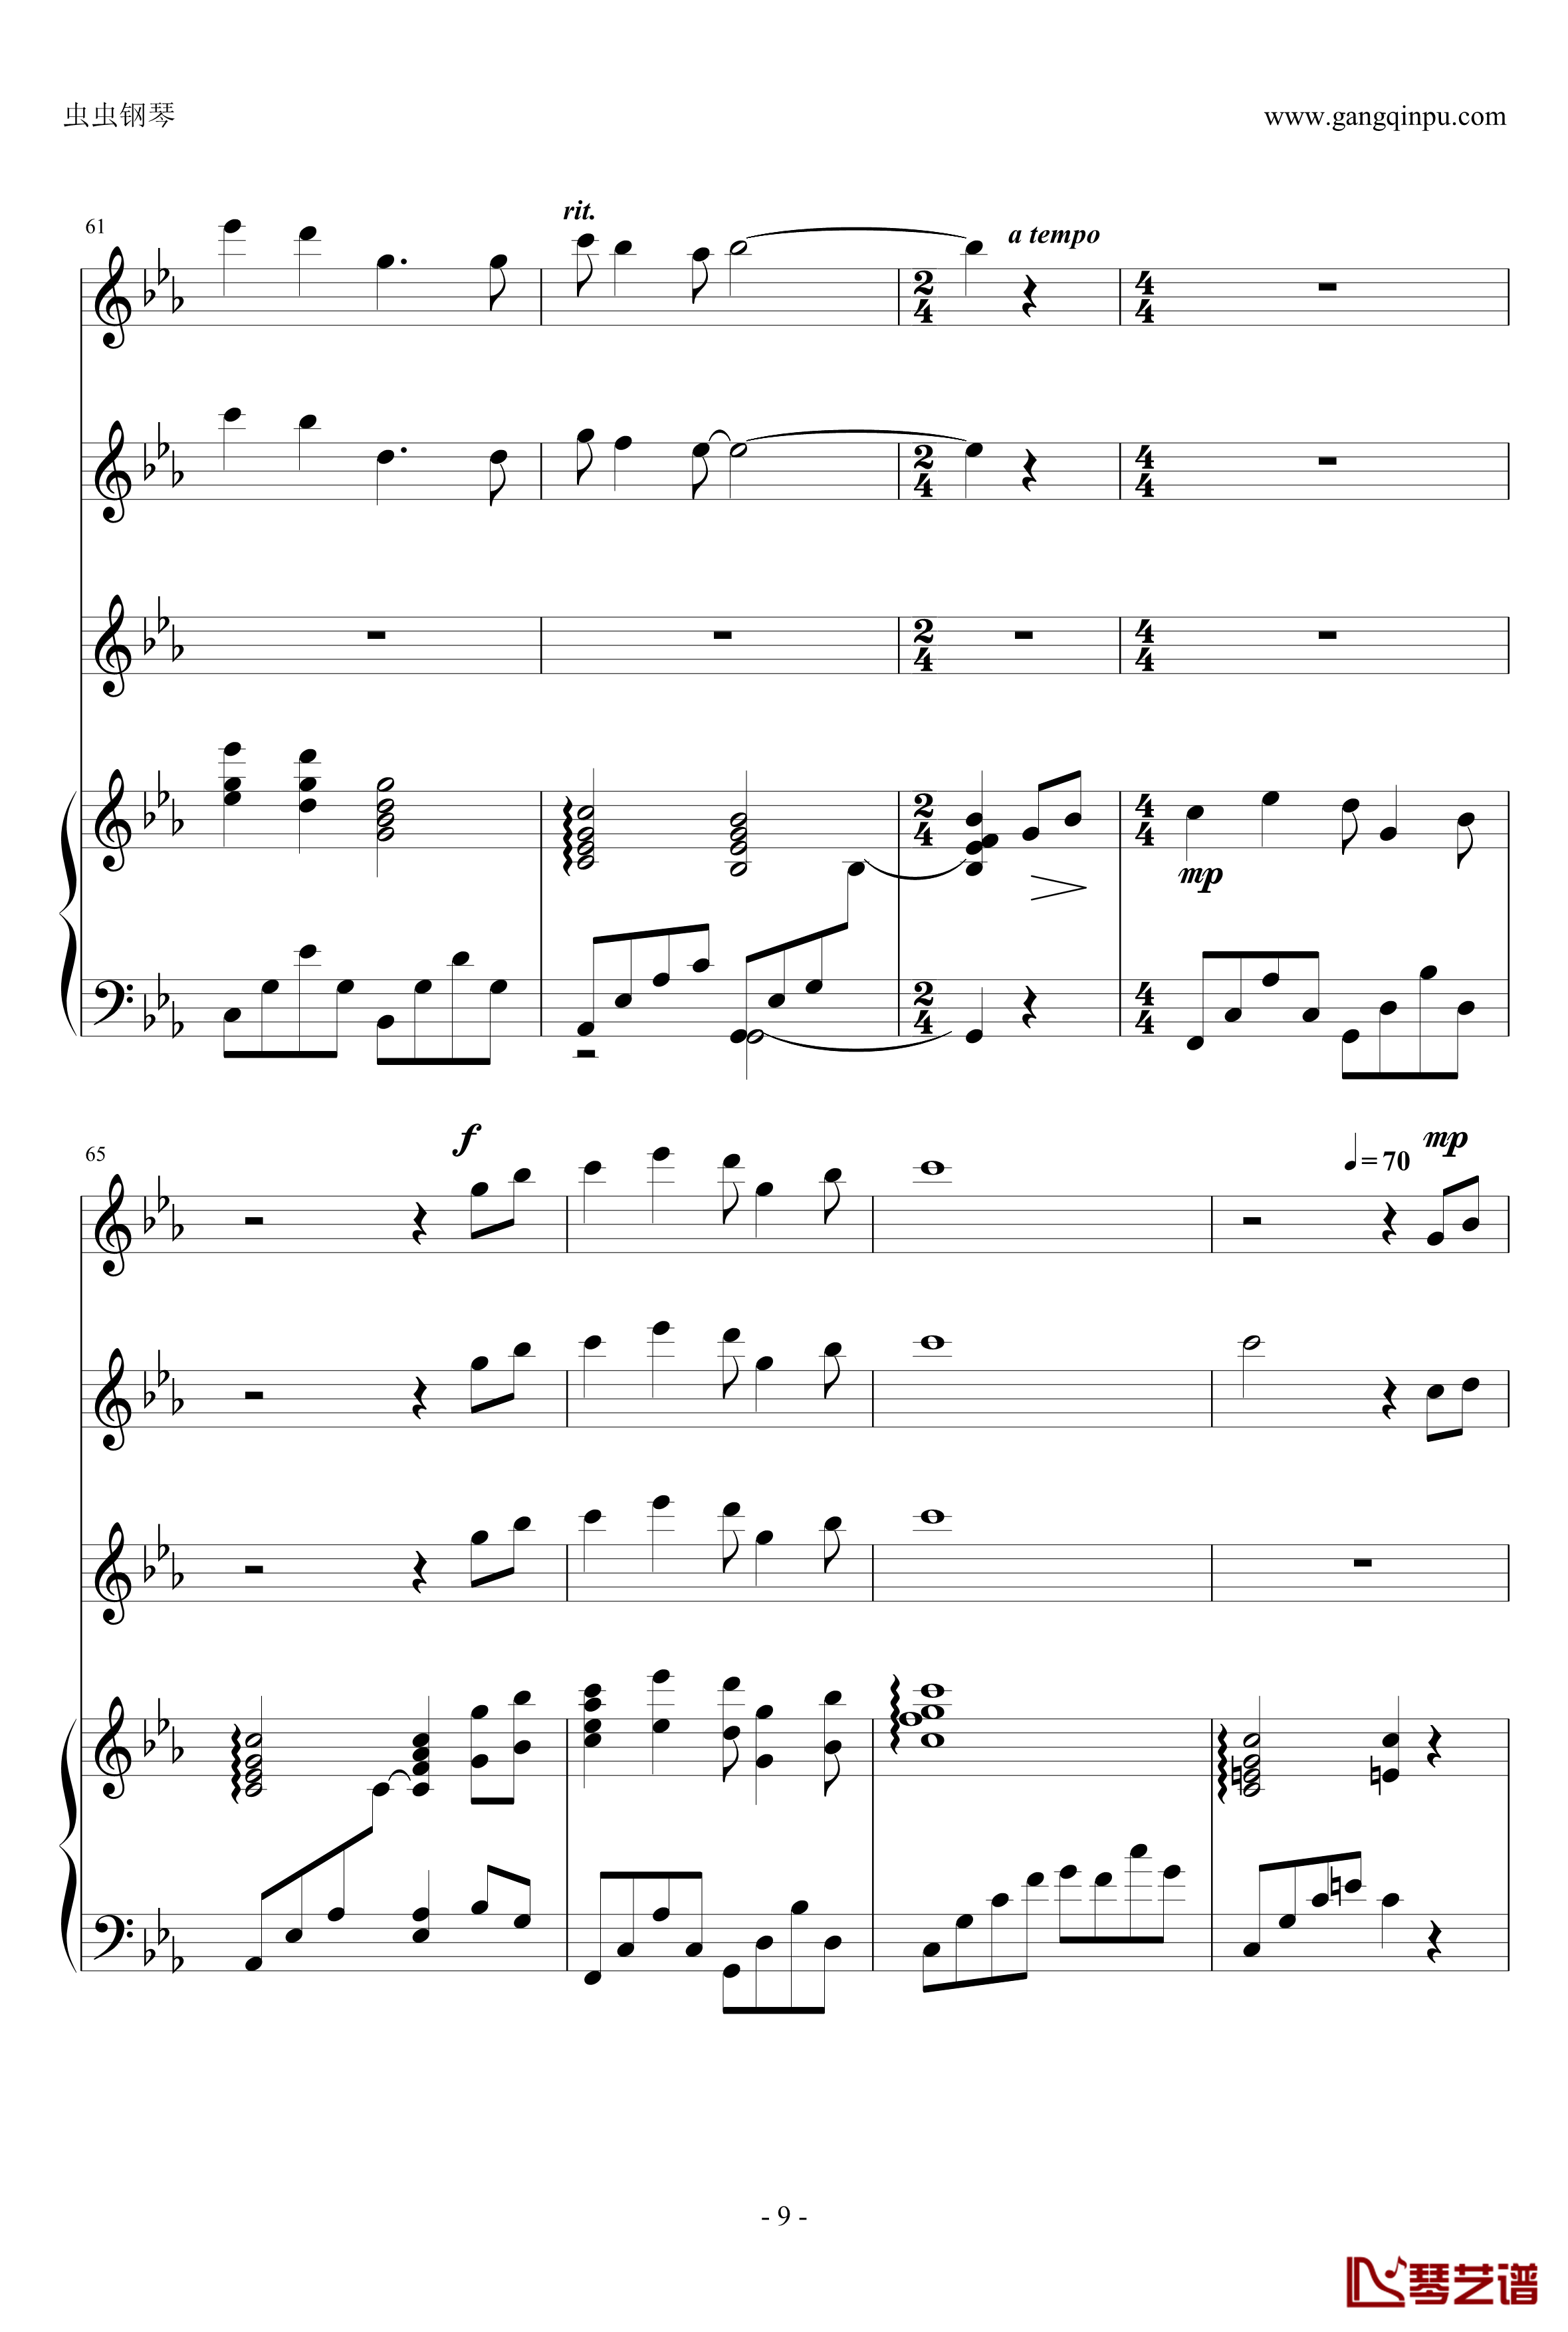 幽灵公主钢琴谱-合奏版总谱-二胡、古筝、小提琴、钢琴-久石让9